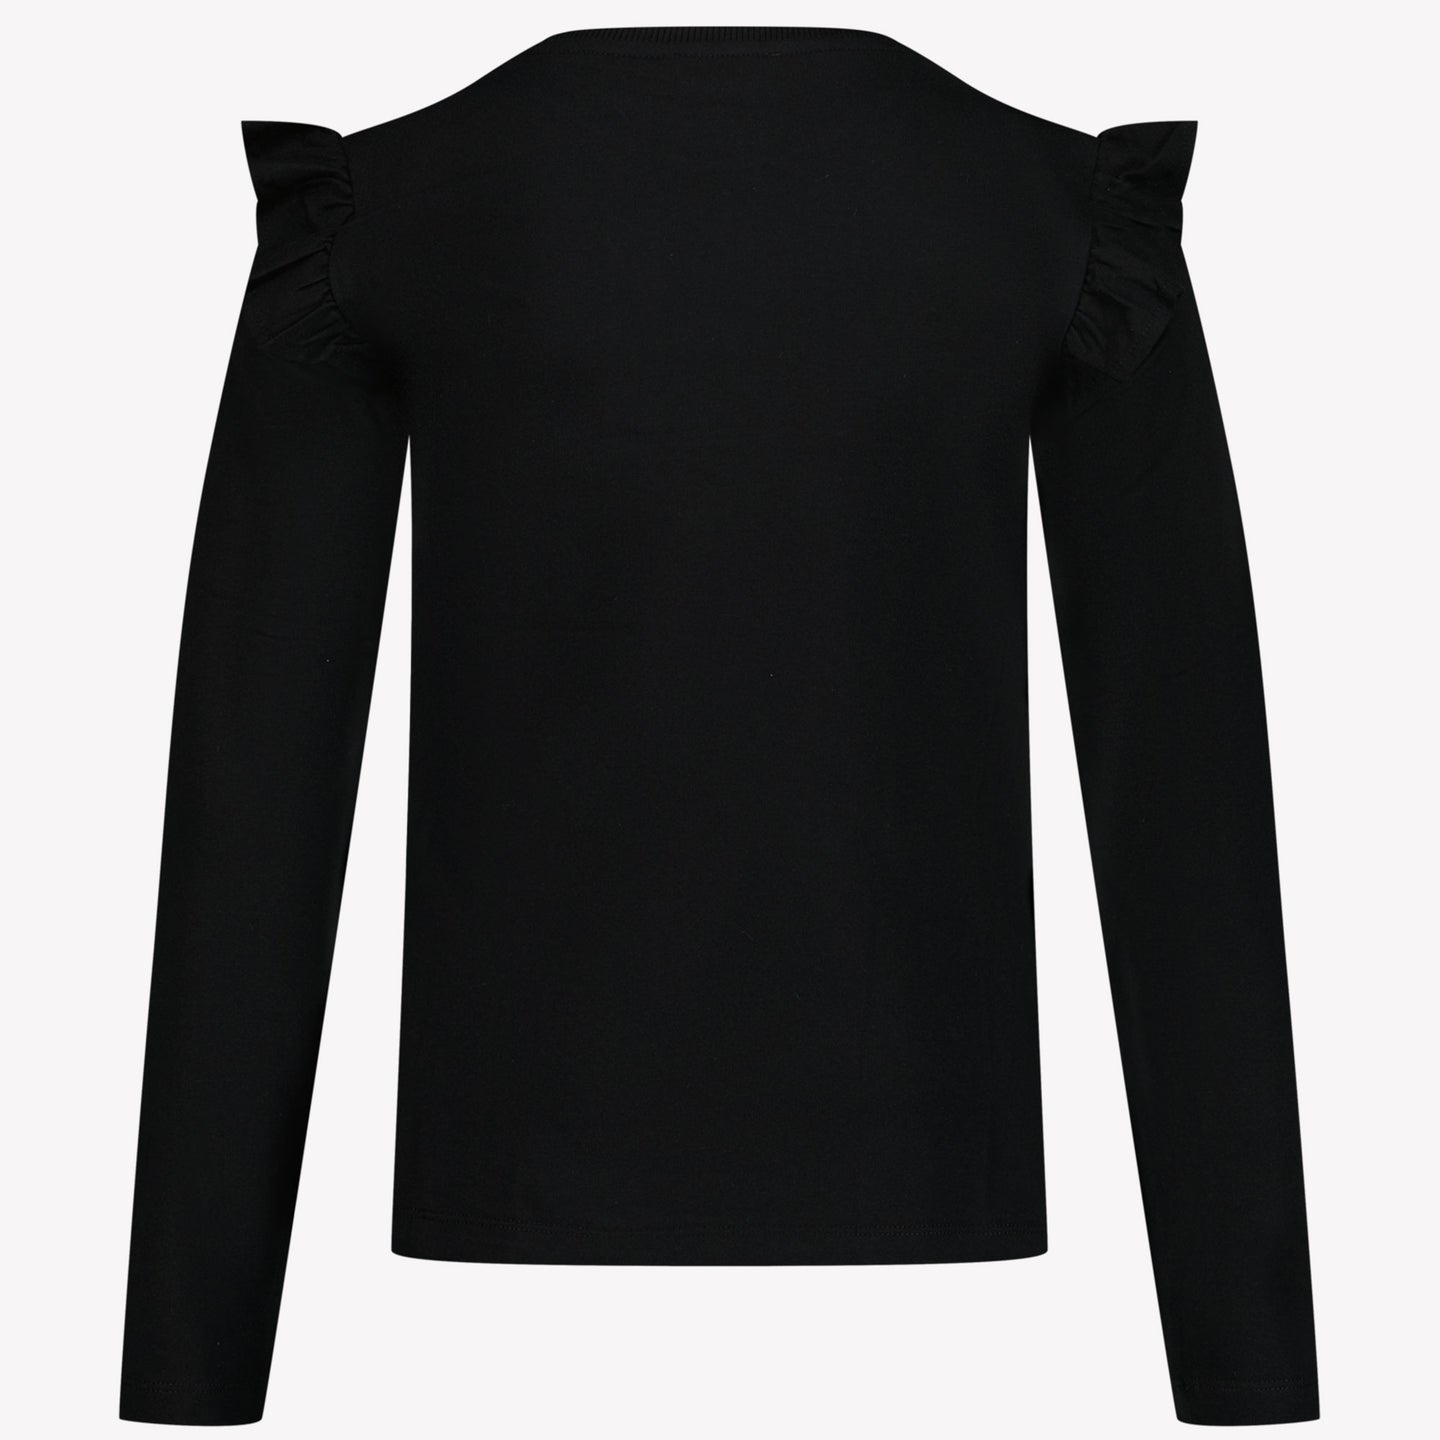 Moschino Girls T-shirt Black